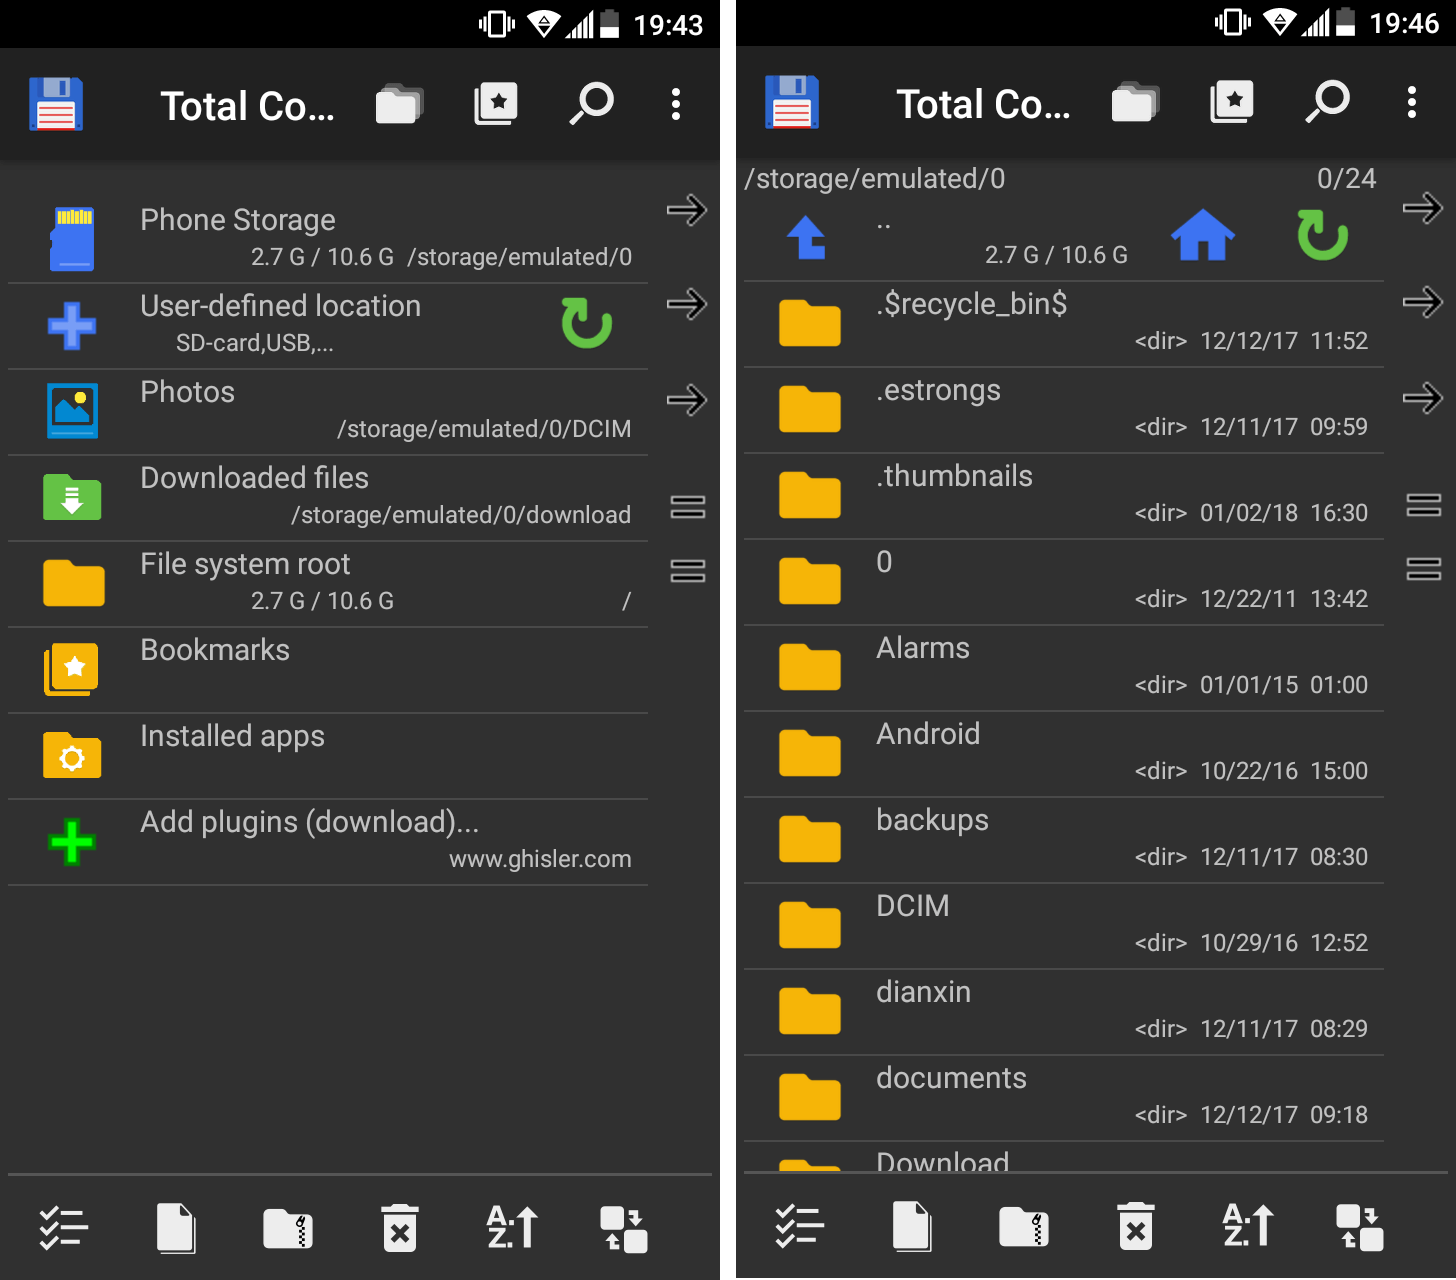 Gestor de archivos para Android Total Commander: menú de inicio y visualización de dos paneles virtuales